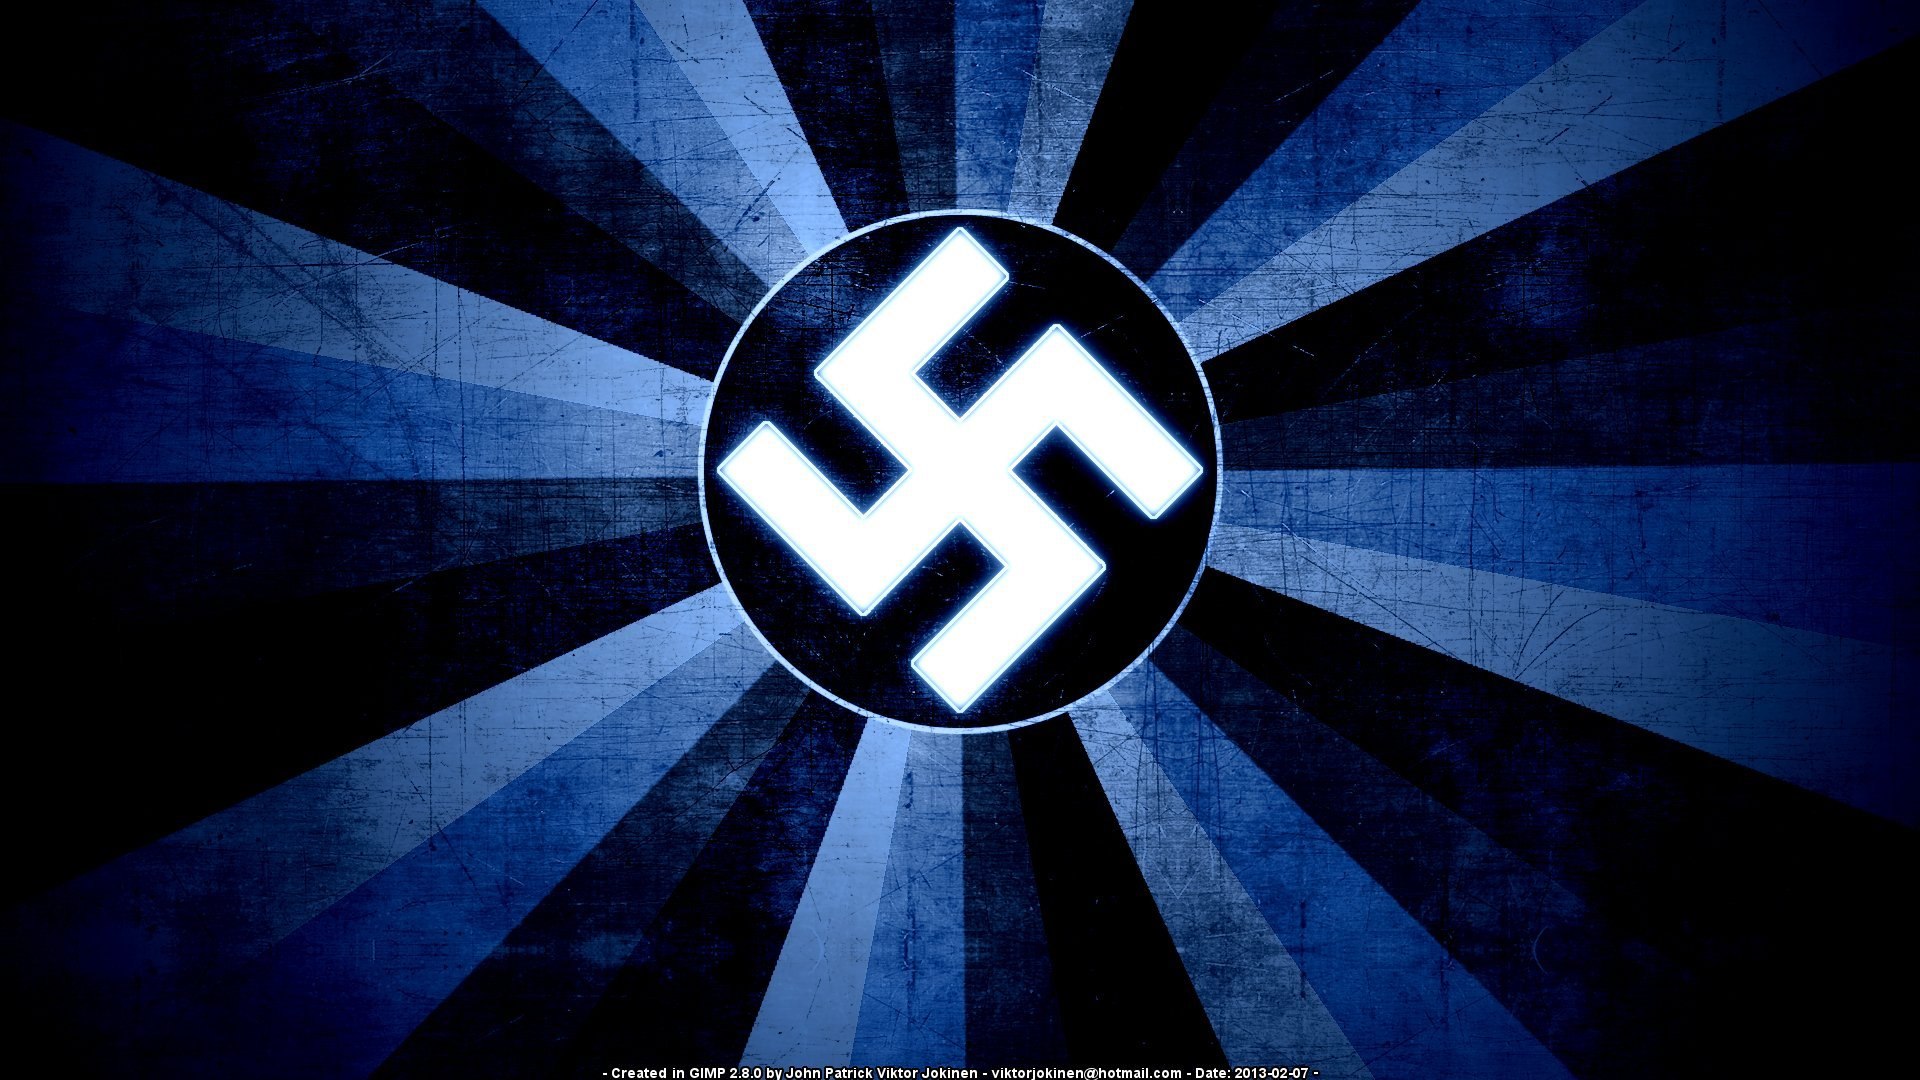 Фон сс. Флаг 3 рейха. Флаг нацистской Германии. Флаг третьего рейха СС.